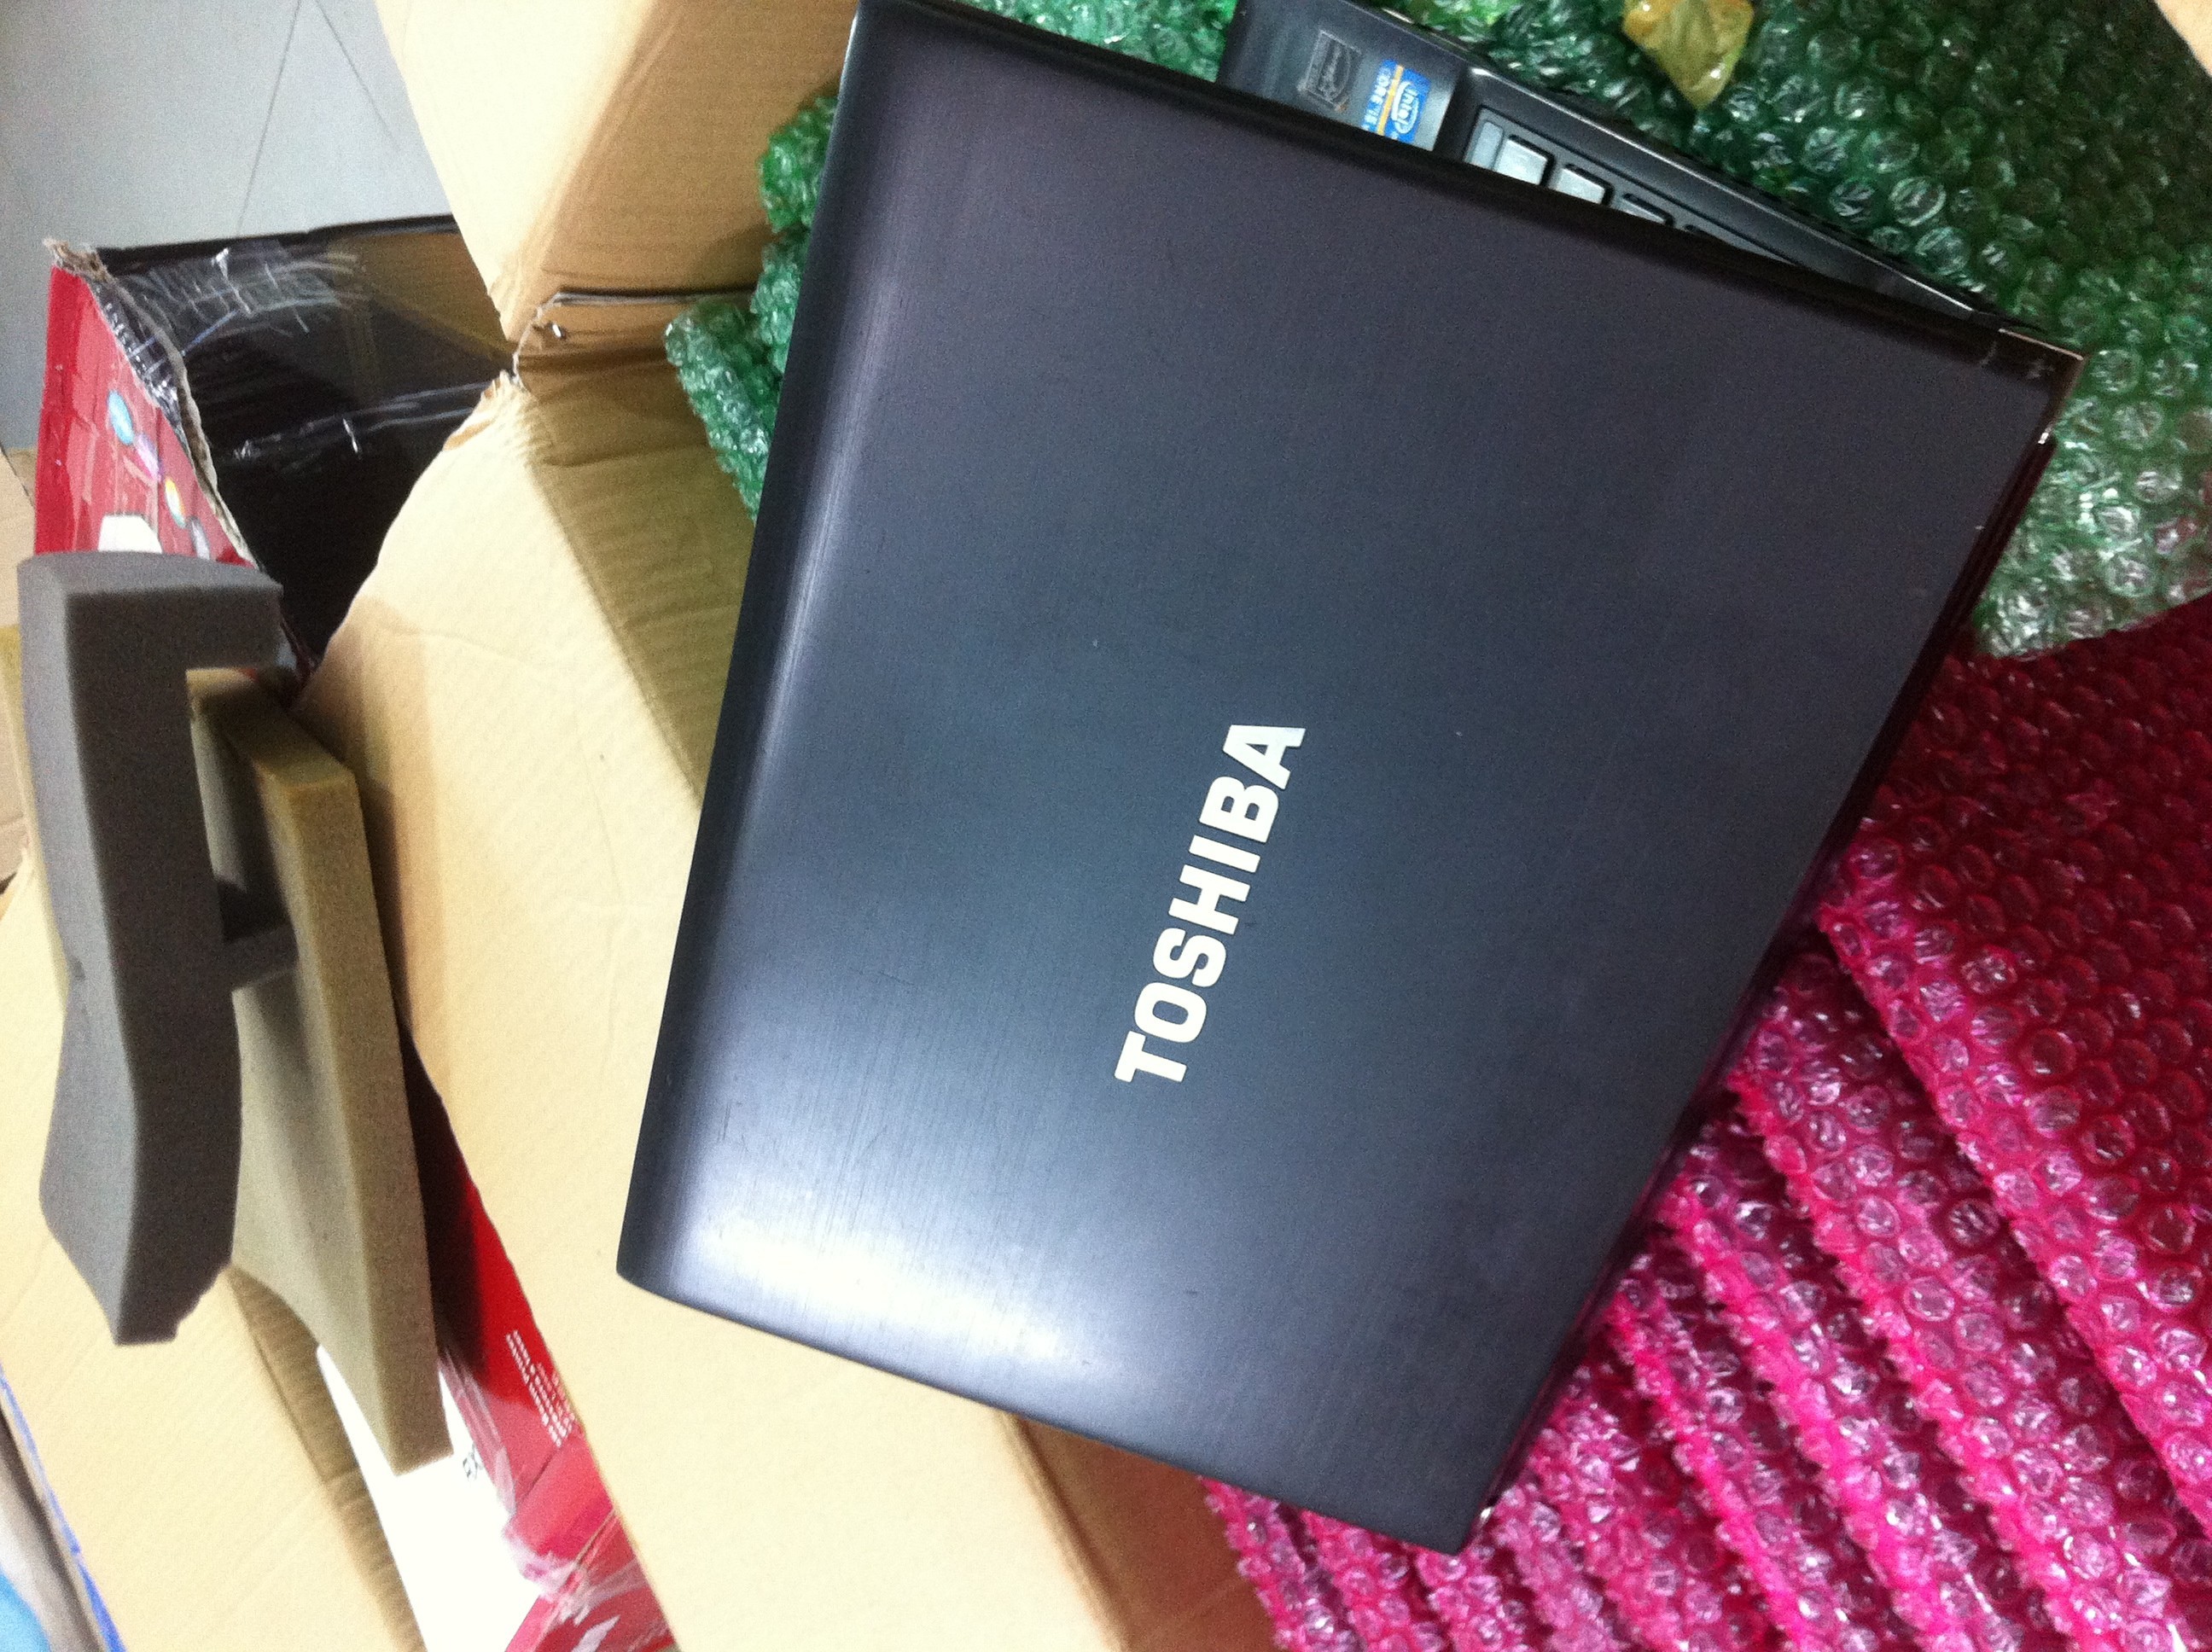 Toshiba Portege R830 - Giá 6.7 triệu - Dòng laptop cao cấp, siêu bền, siêu nhẹ 1,4 kg . 143583323585166930